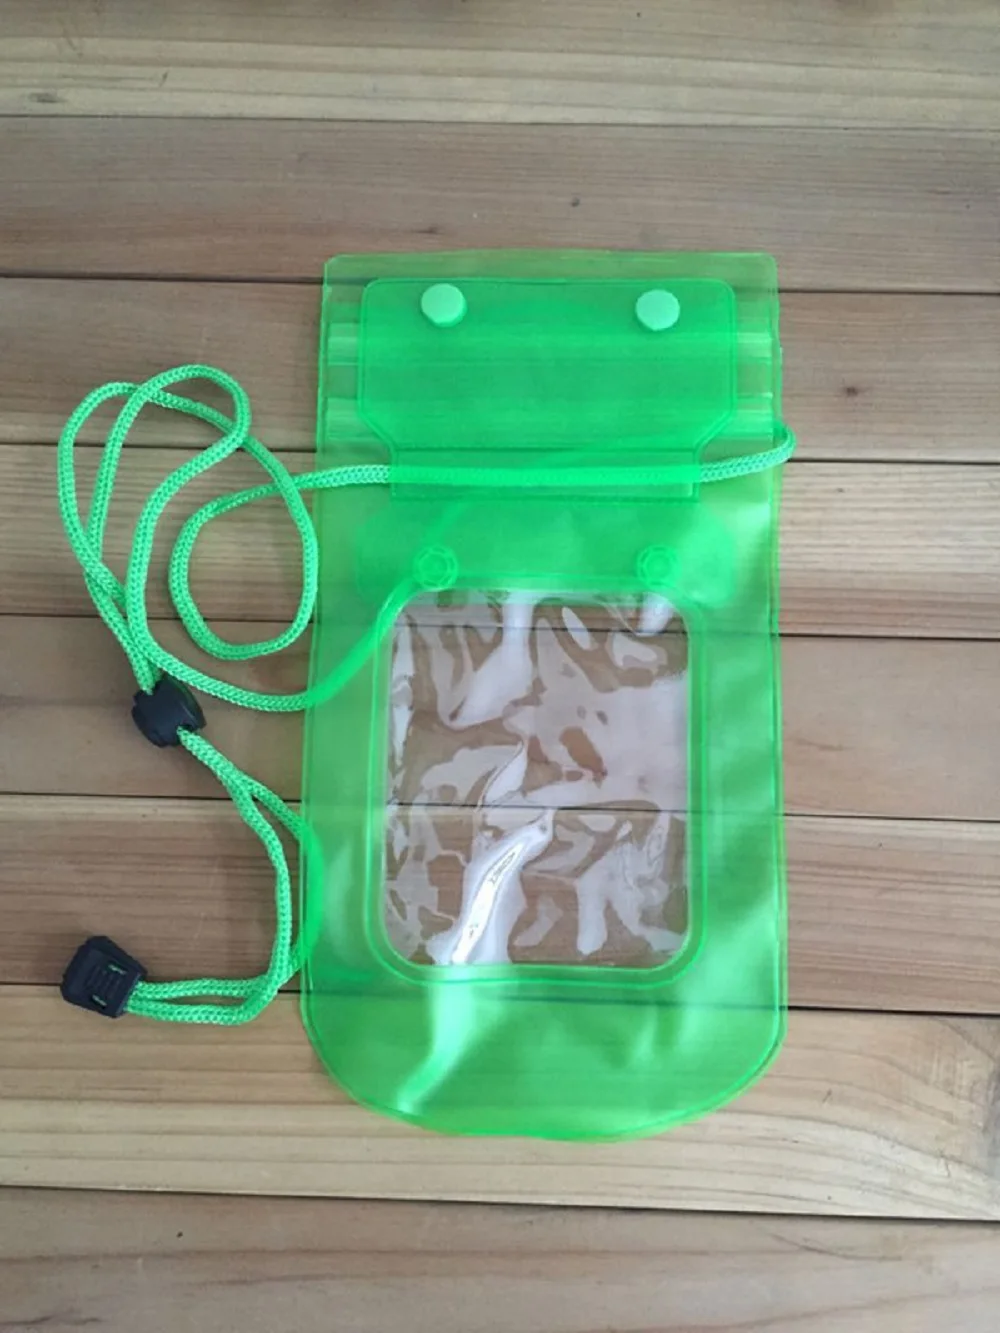 ПВХ водонепроницаемая сумка для дайвинга для мобильных телефонов подводный чехол для Asus Zenfone 2 Laser ZE550KL 3 4 5 GO Selfie Go